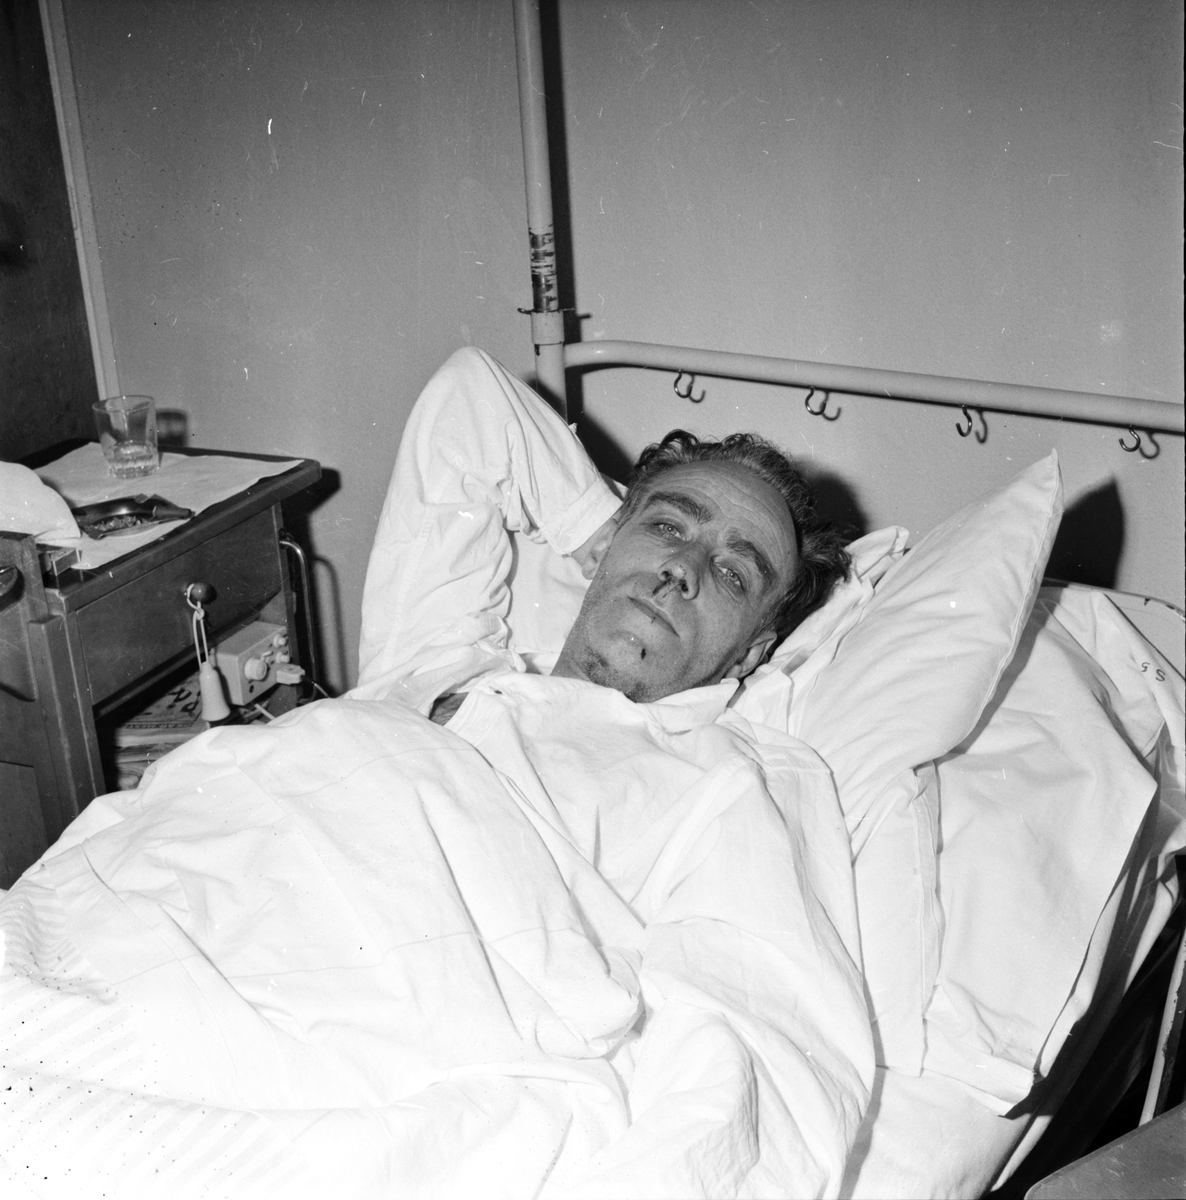 Tolgerdt Karl-Erik, Säkerhetsing. Mölndal, 2 Mars 1964
Tolgerdt vårdas efter järnvägsolycka i Holmsveden då en rälsbuss körde in i ett stillastående tågset.